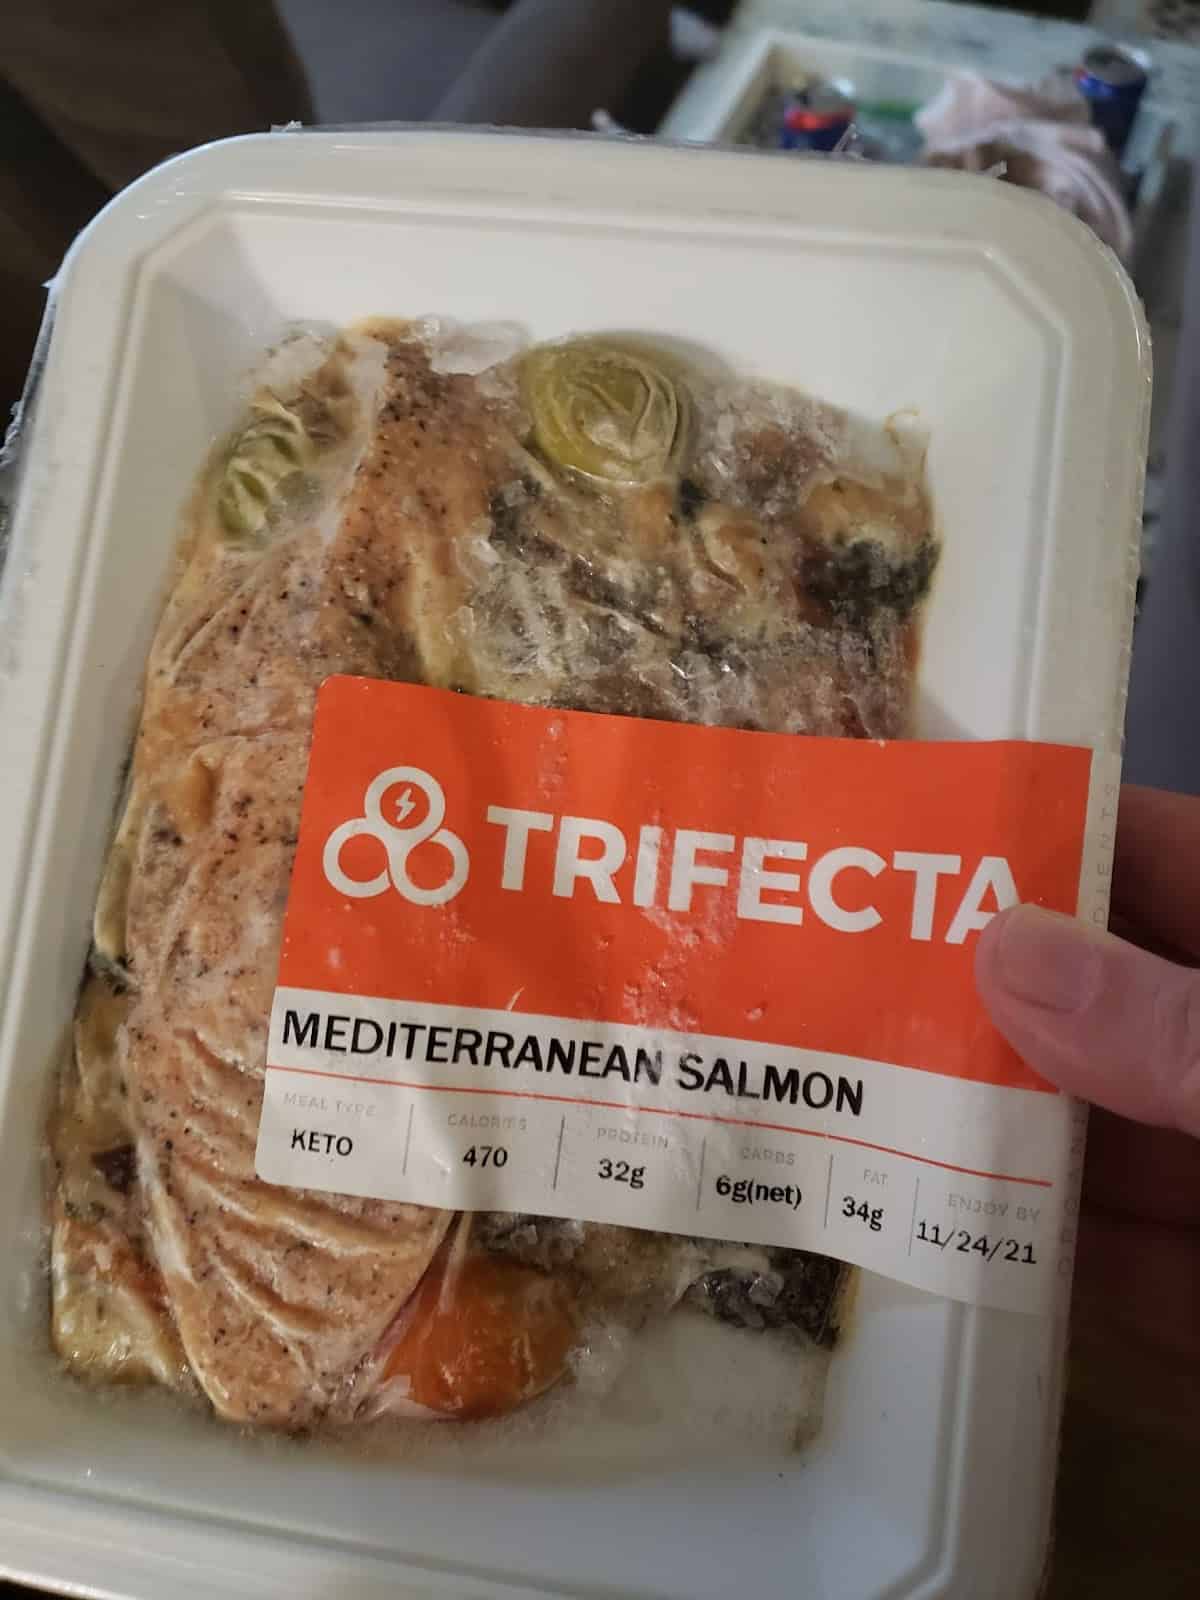 Trifecta Mediterranean Salmon